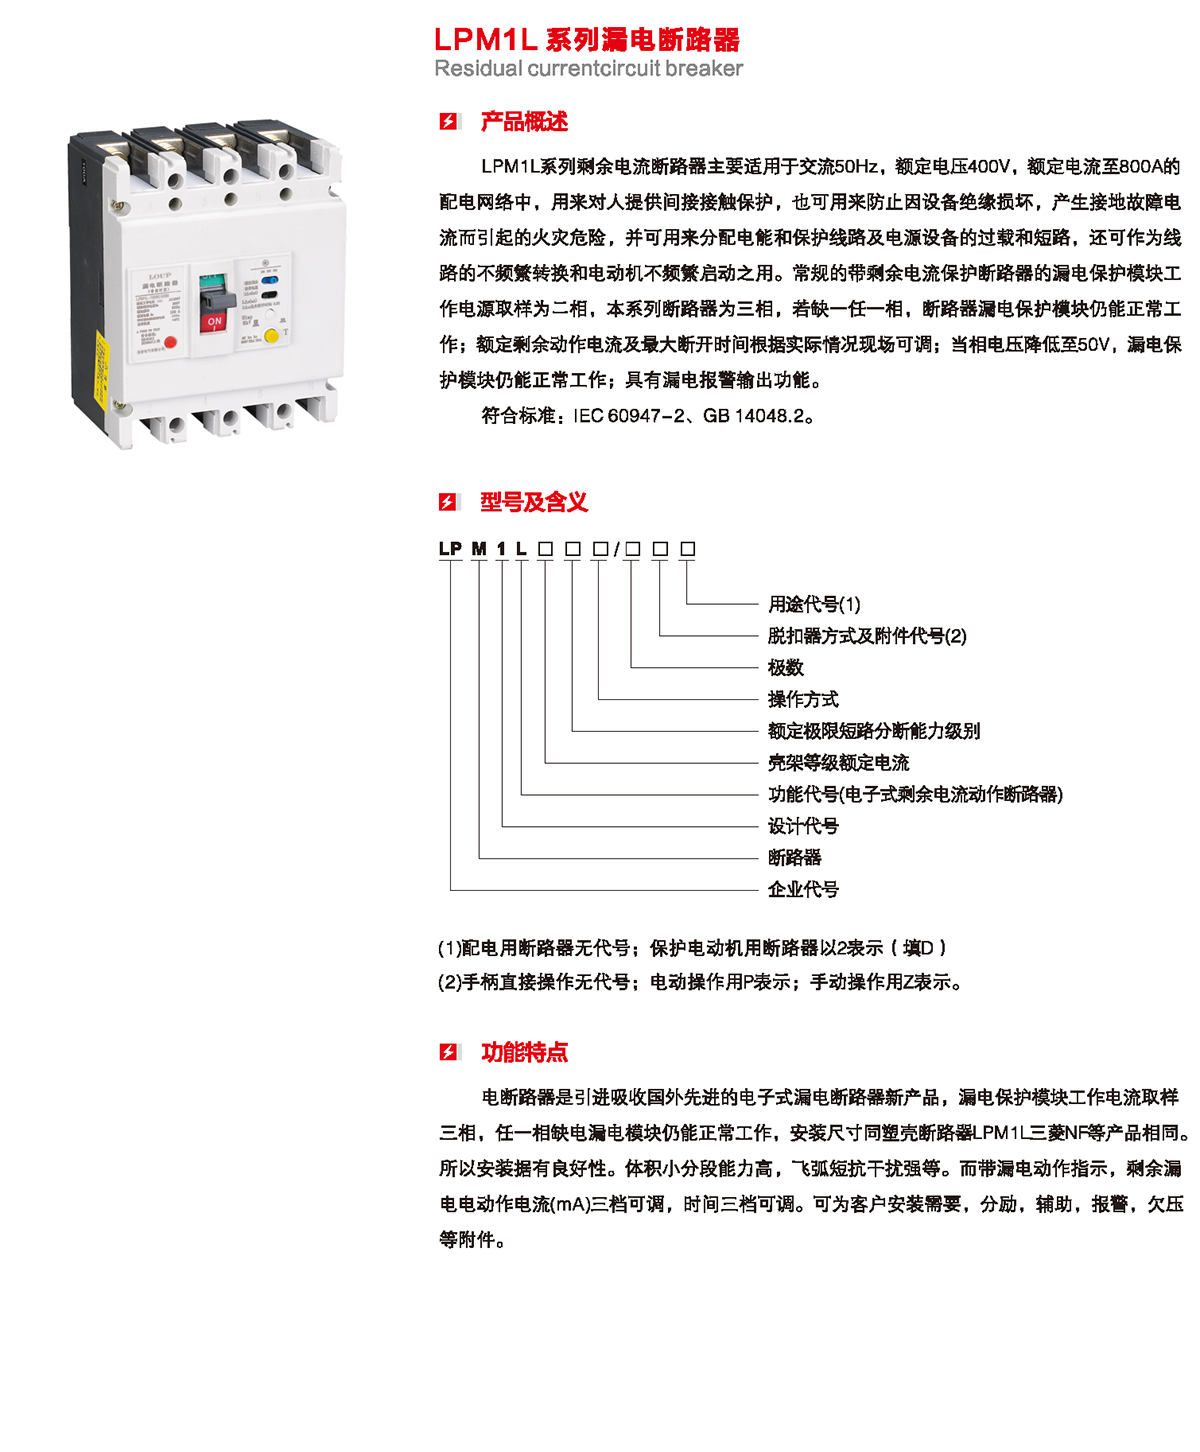 LPM1L系列漏電斷路器產品概述、型號含義、功能特點